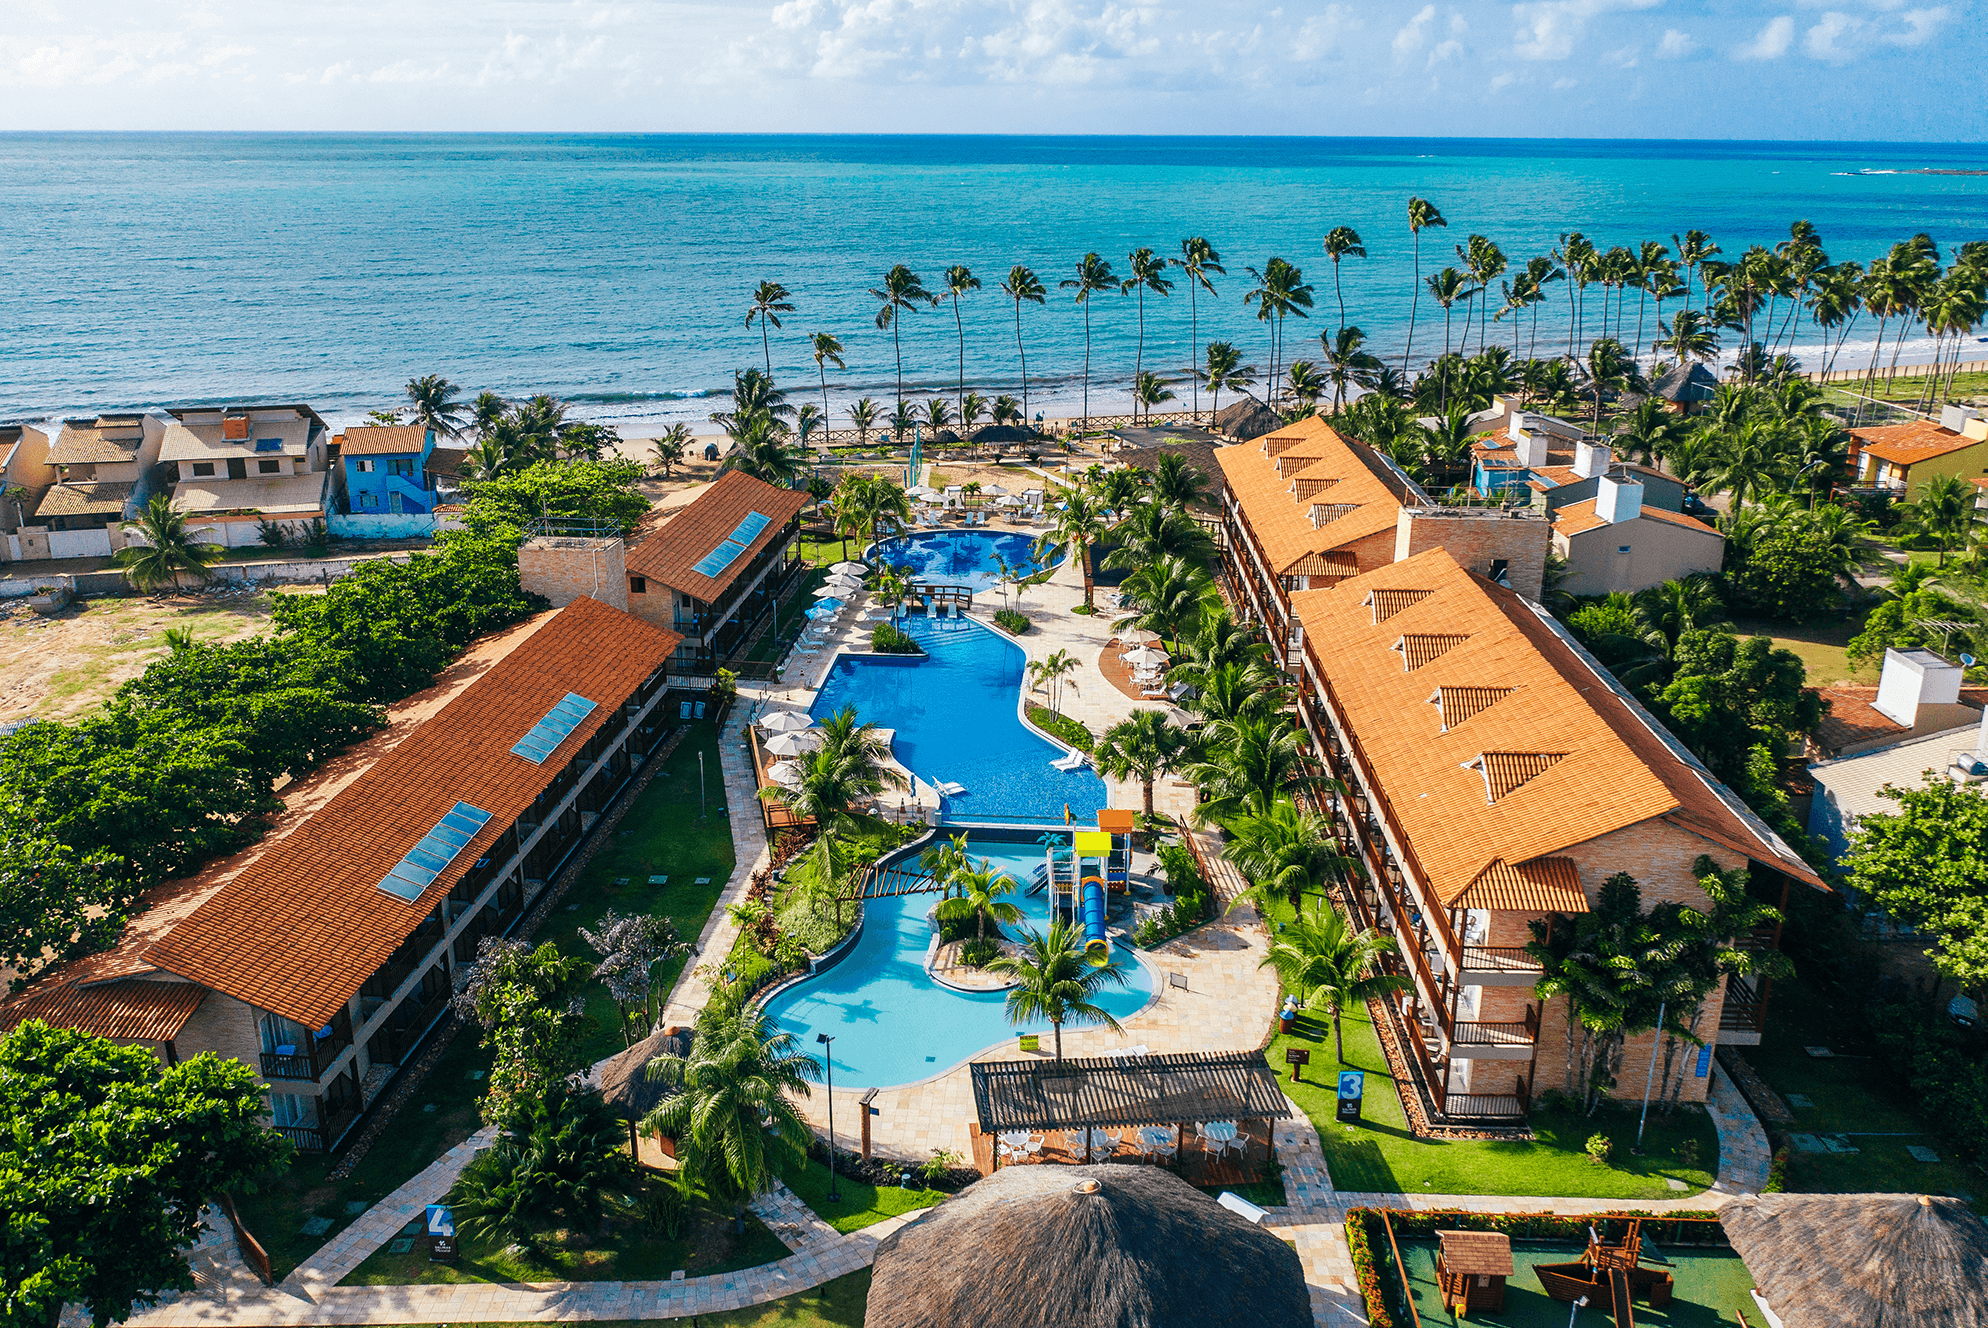 Vista aérea do resort Salinas Maceió. Cercado por palmeiras altas e diretamente de frente para a praia, com o vasto oceano azul ao fundo. As construções do resort têm telhados de cerâmica vermelha, e uma grande piscina em forma de lagoa com toboágua.